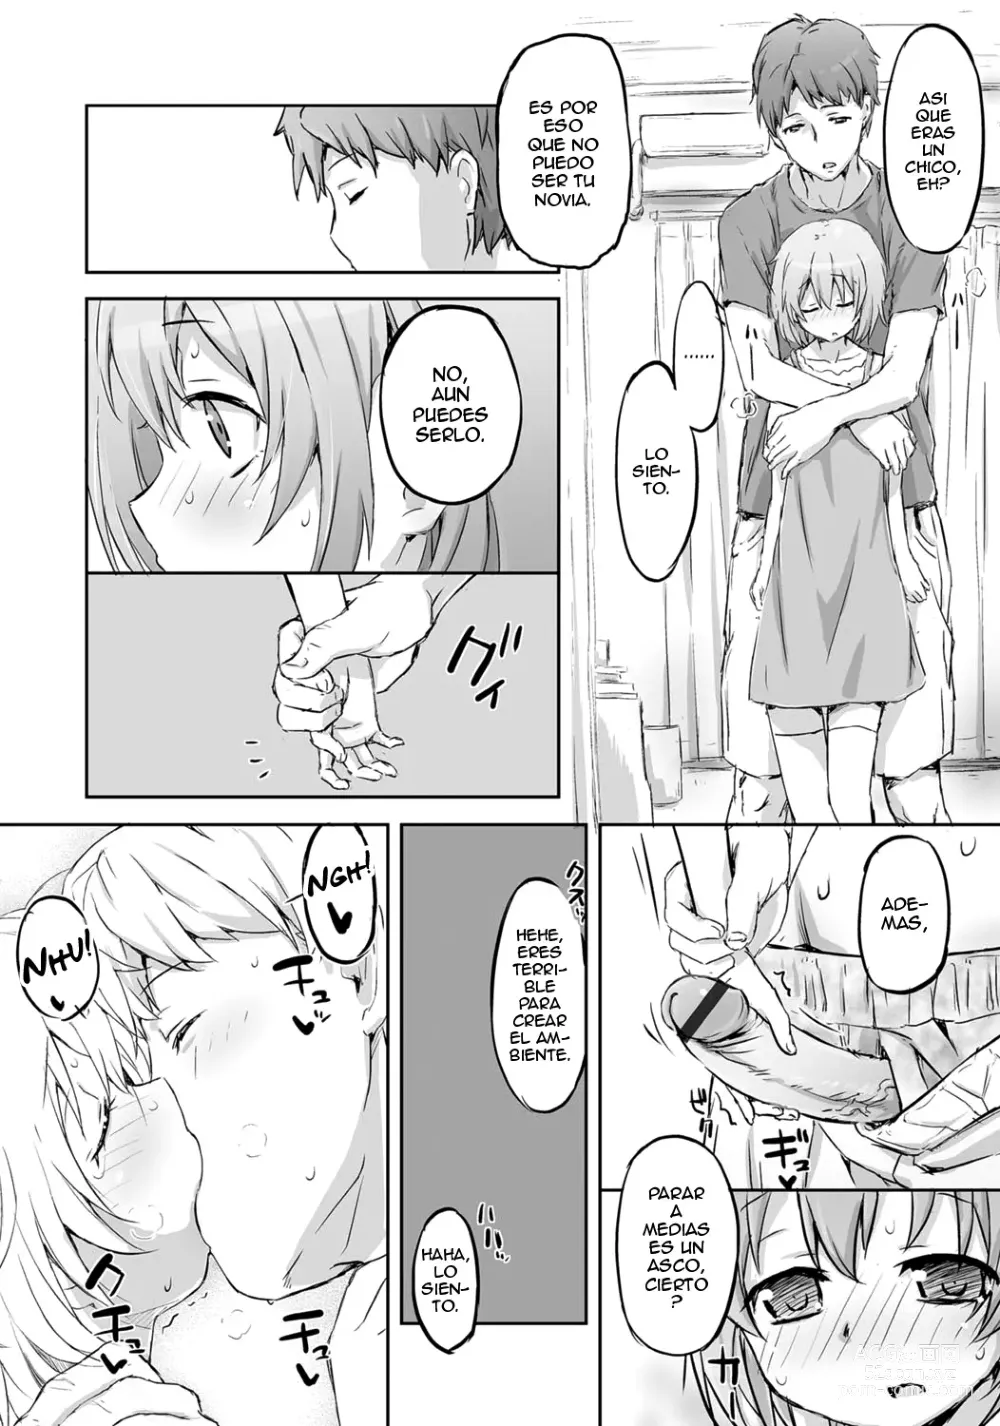 Page 107 of manga Gekkan Web Otoko no Ko-llection! S Vol. 06